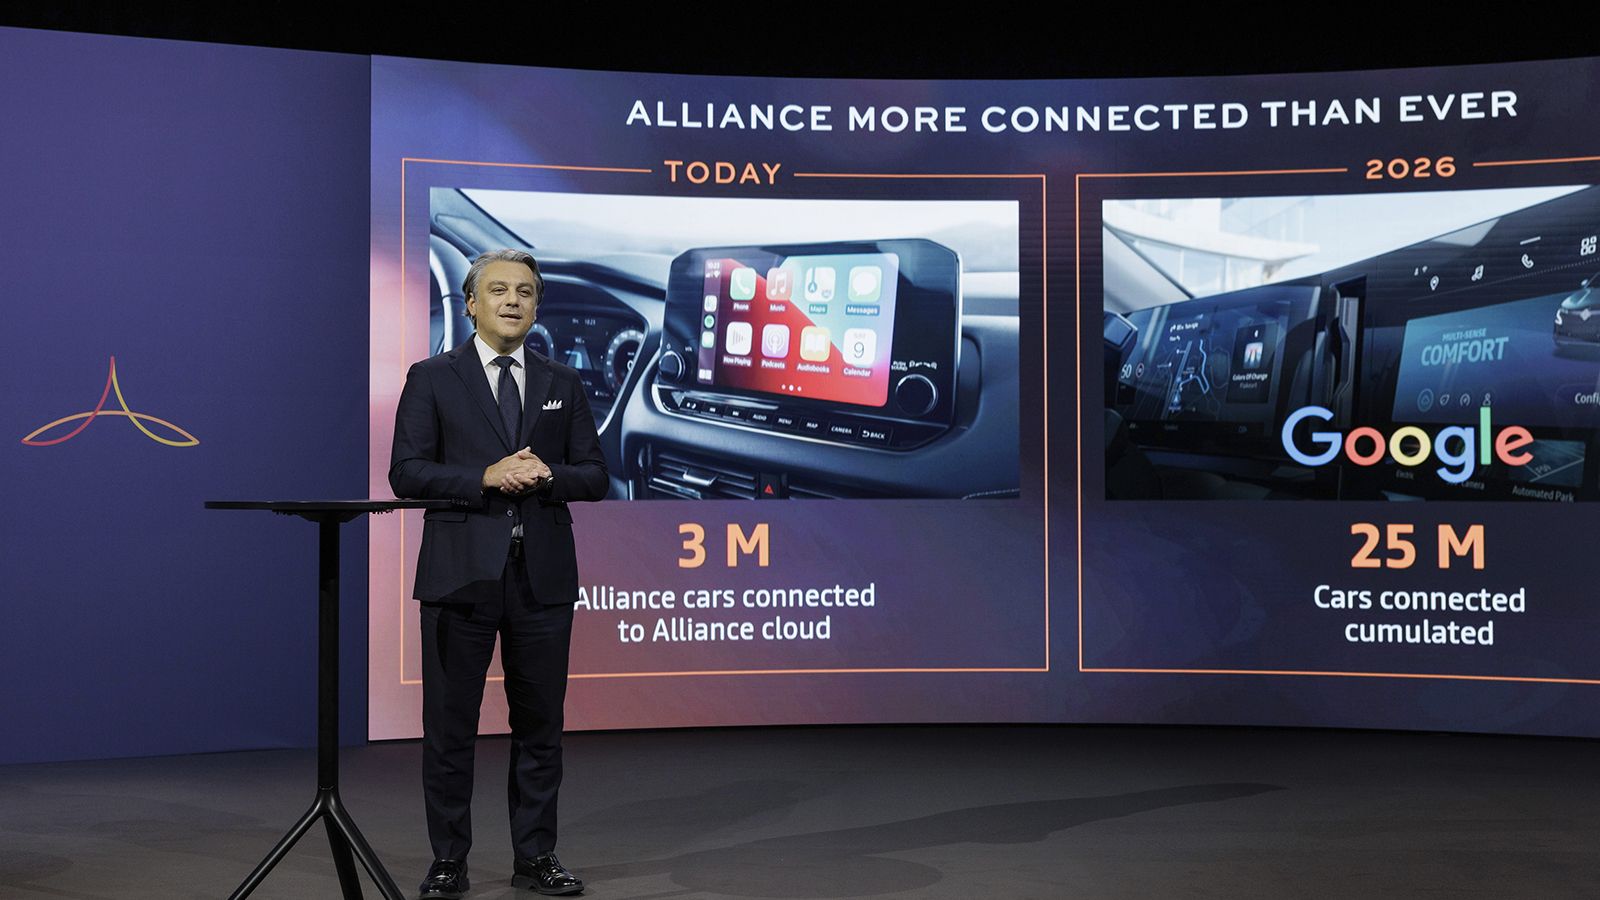 Συνολικά, στο «Alliance Cloud» μέχρι το 2026 θα είναι συνδεδεμένα 25 εκ. οχήματα, τα οποία θα είναι τα πρώτα που θα εξοπλίζονται με το οικοσύστημα της Google.